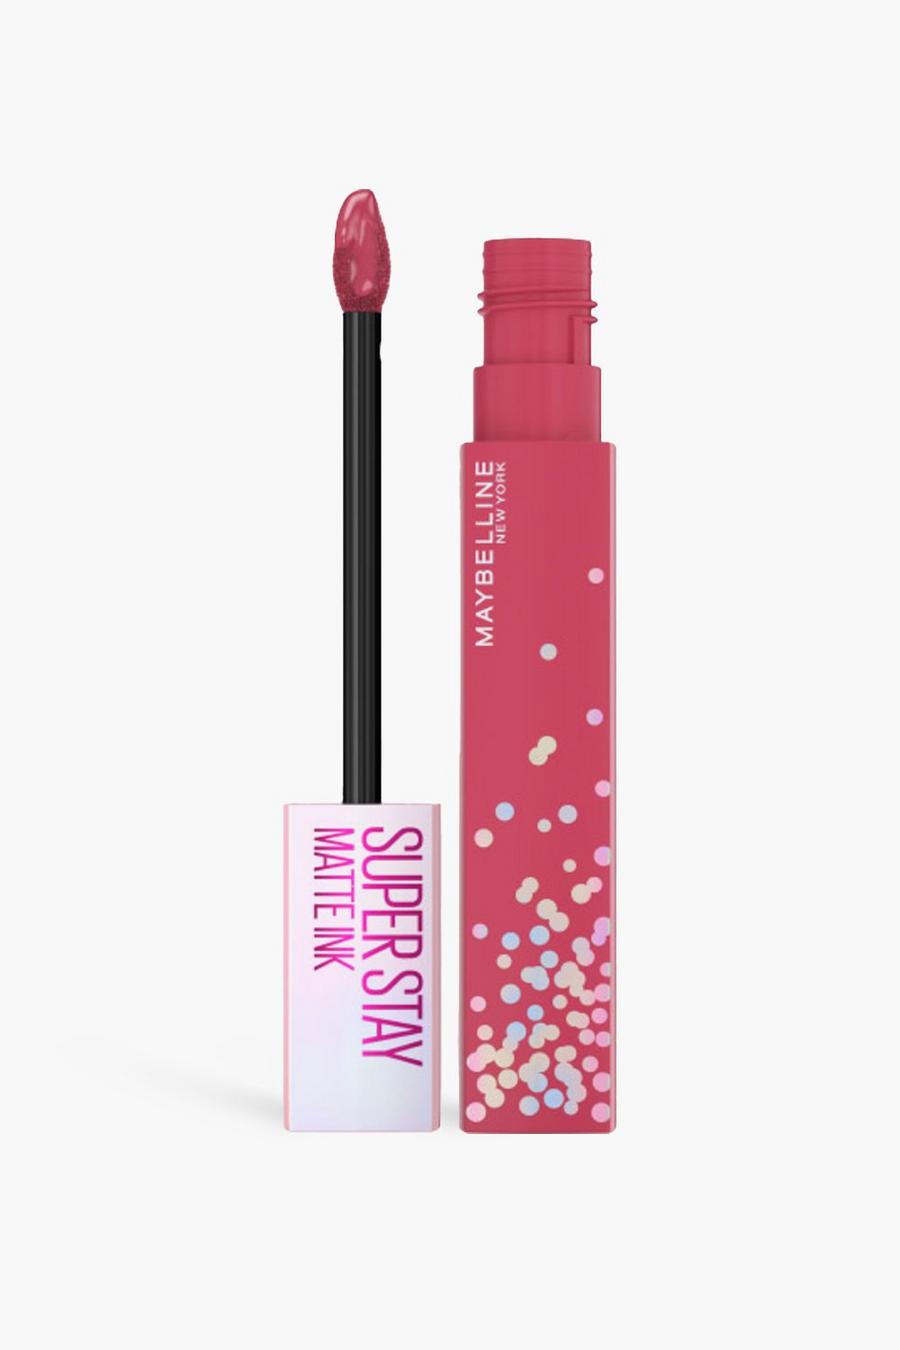 Maybelline SuperStay Matte Ink Pink Liquid Lipstick - Birthday Bestie